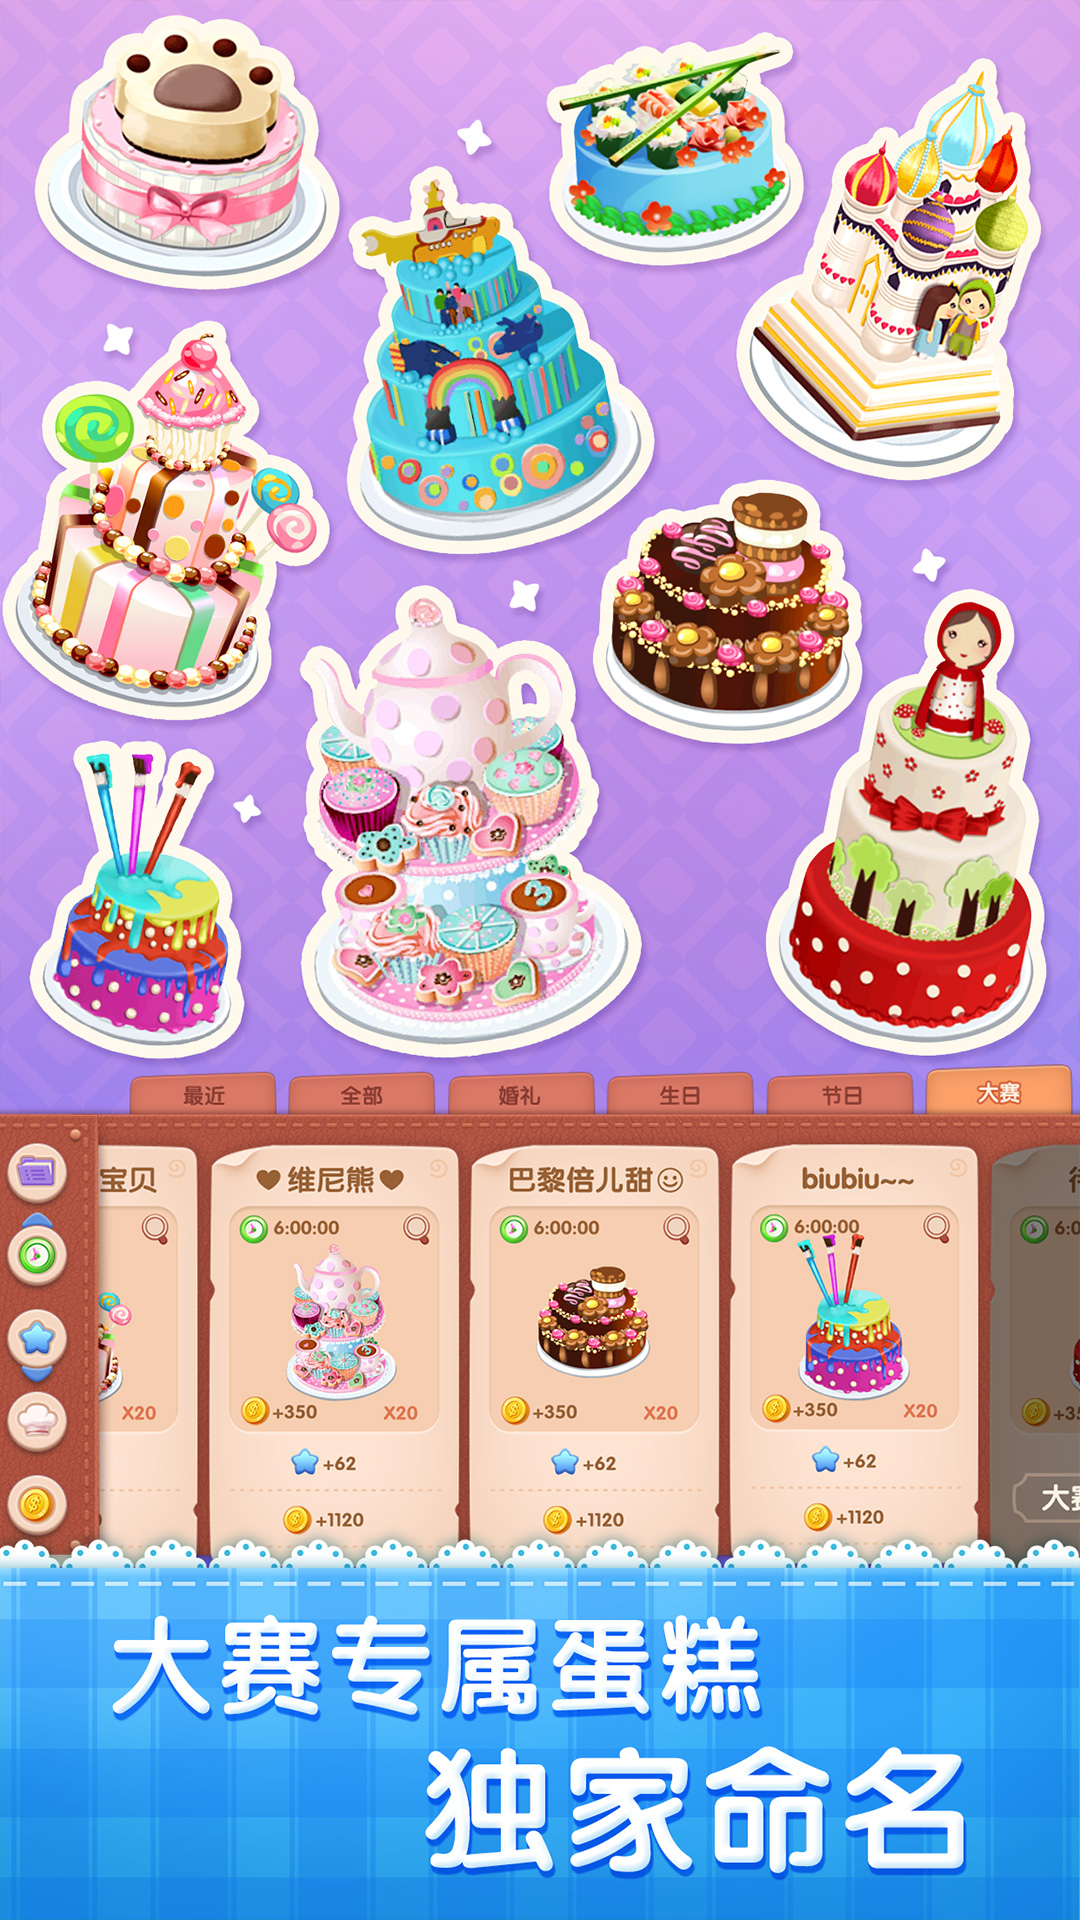 关于蛋糕制作商店游戏下载安卓的信息